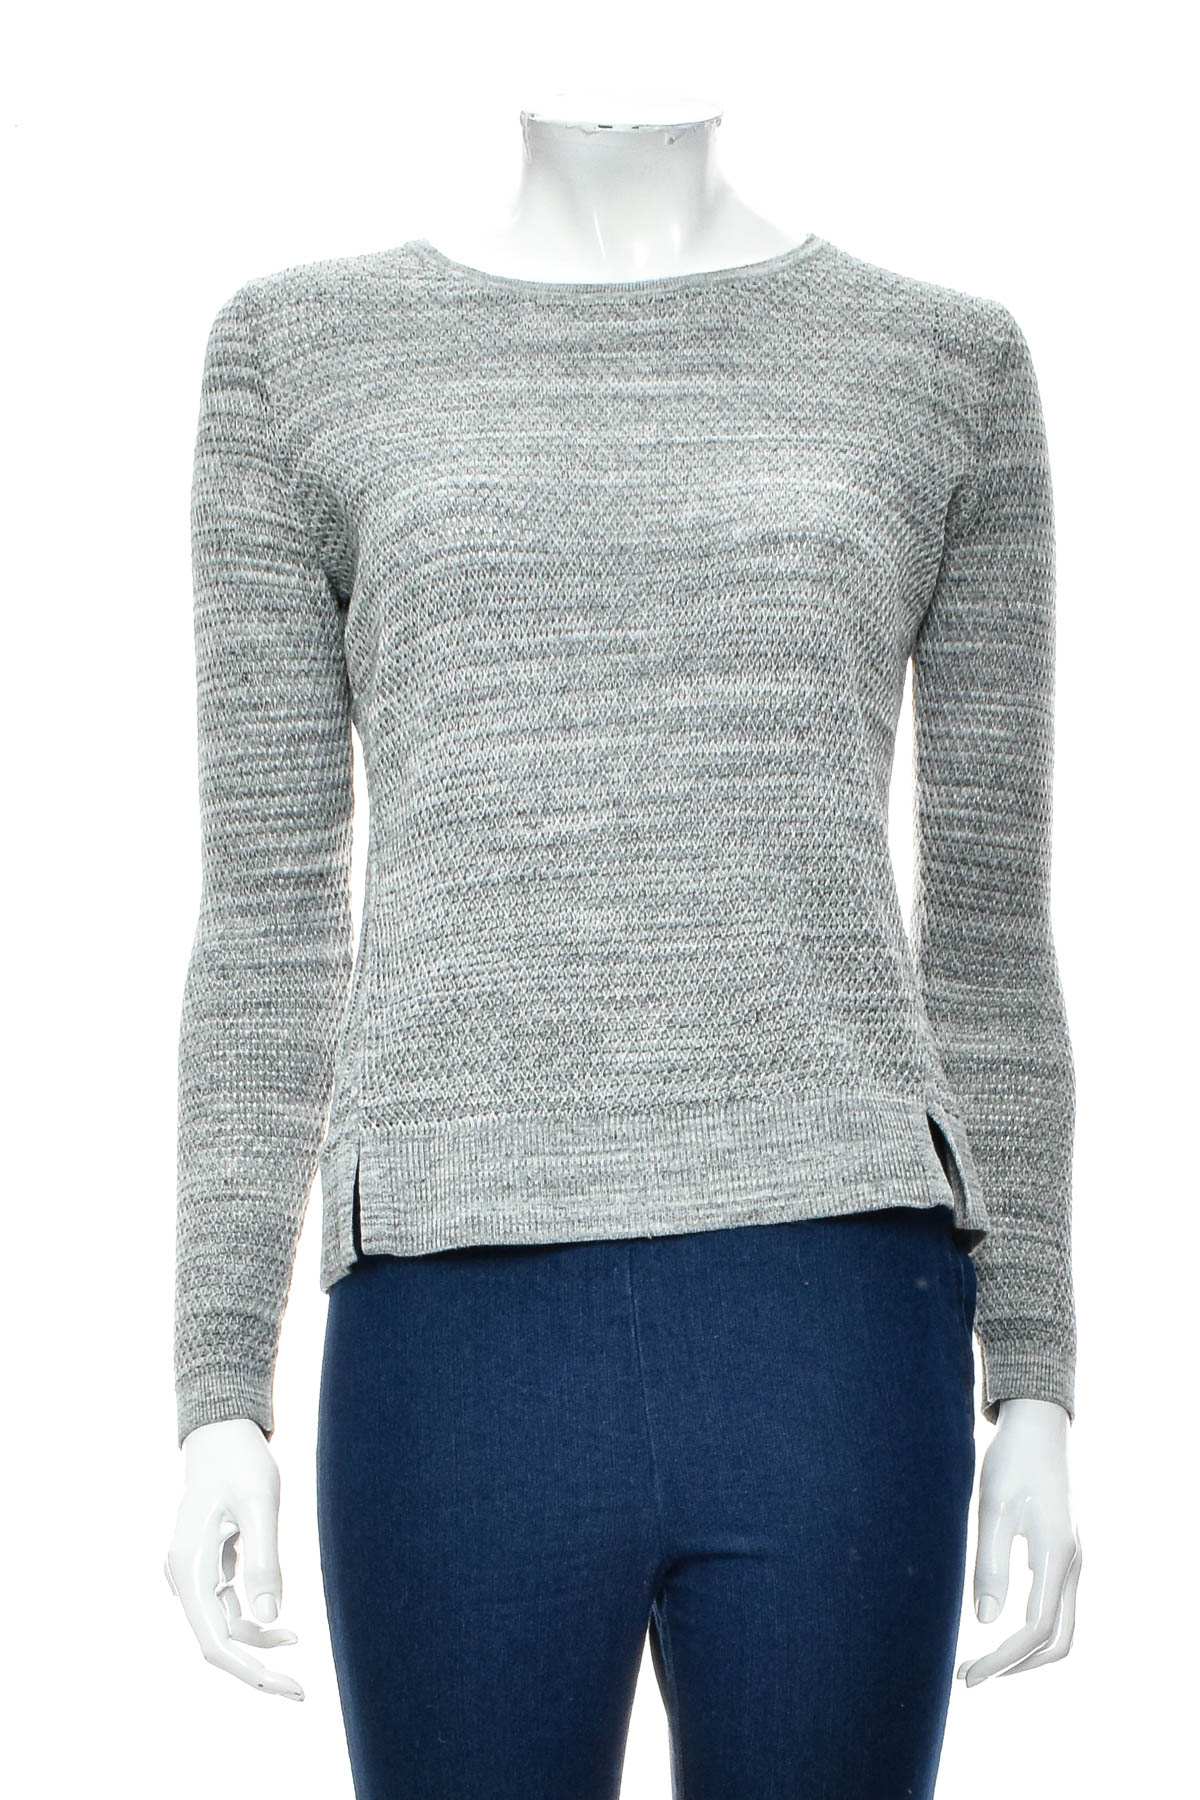 Women's sweater - LOFT Ann Taylor - 0